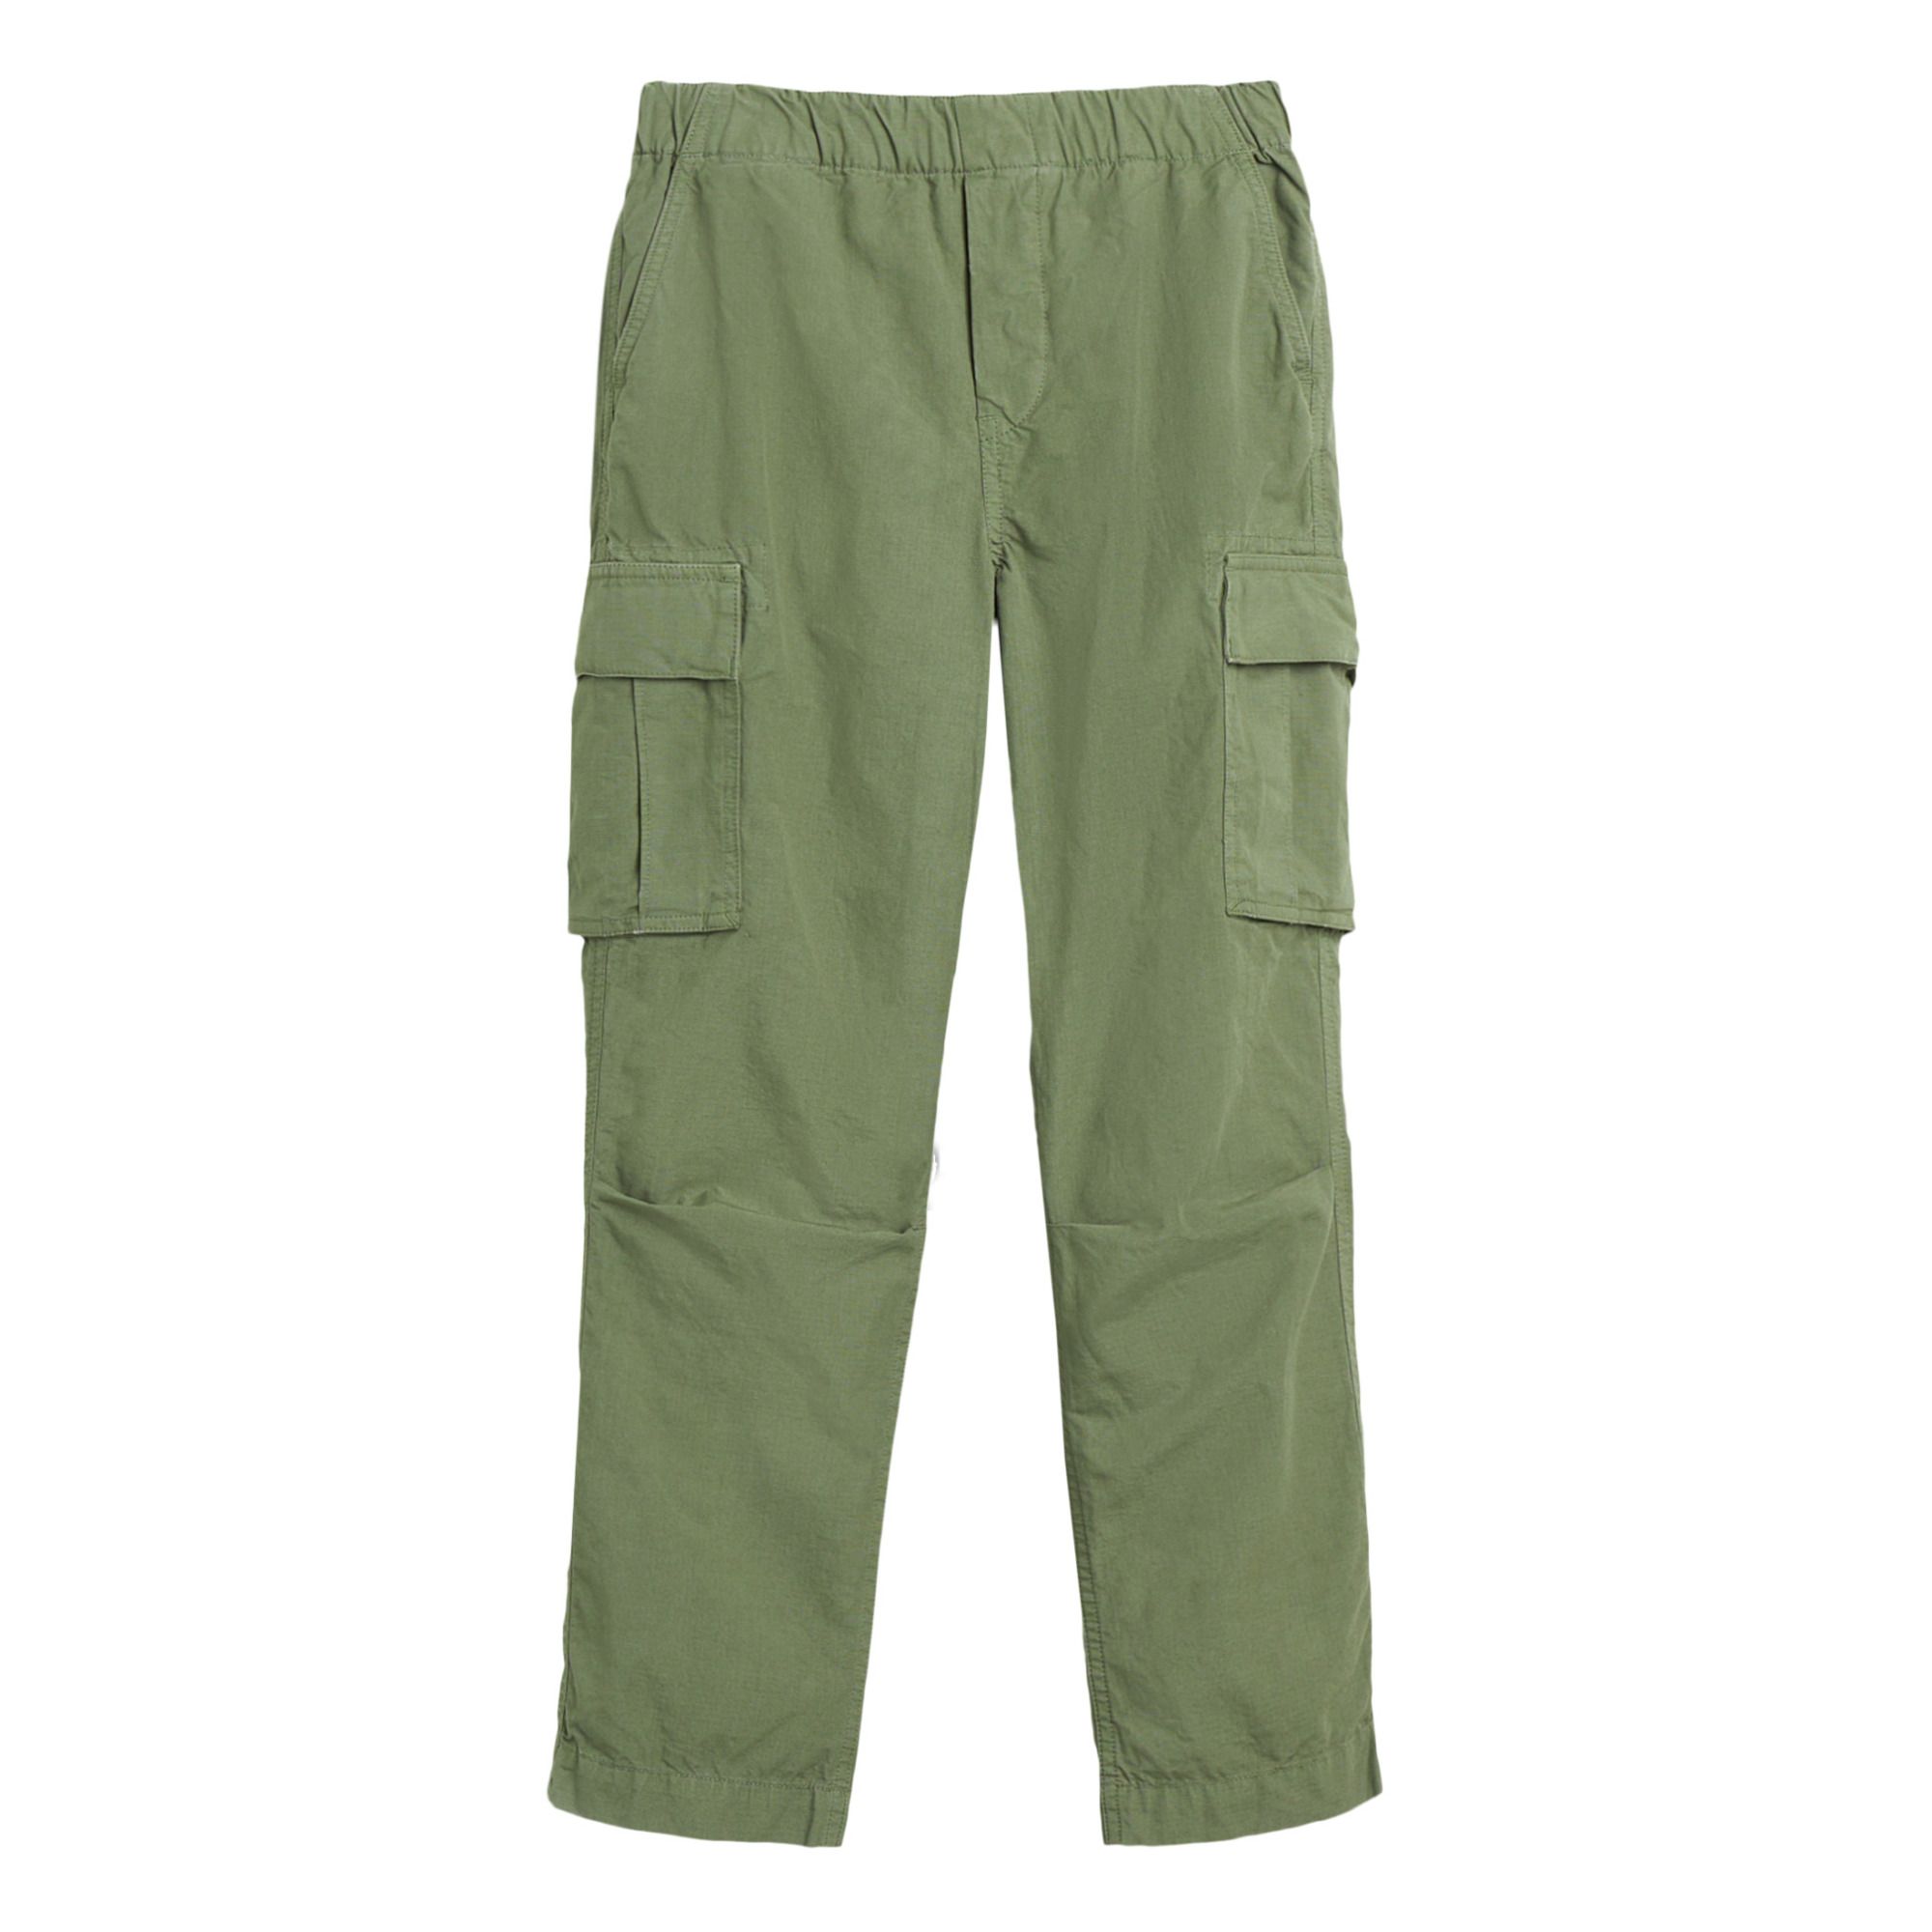 Bellerose - Pantalon Cargo Pazy - Garçon - Vert kaki